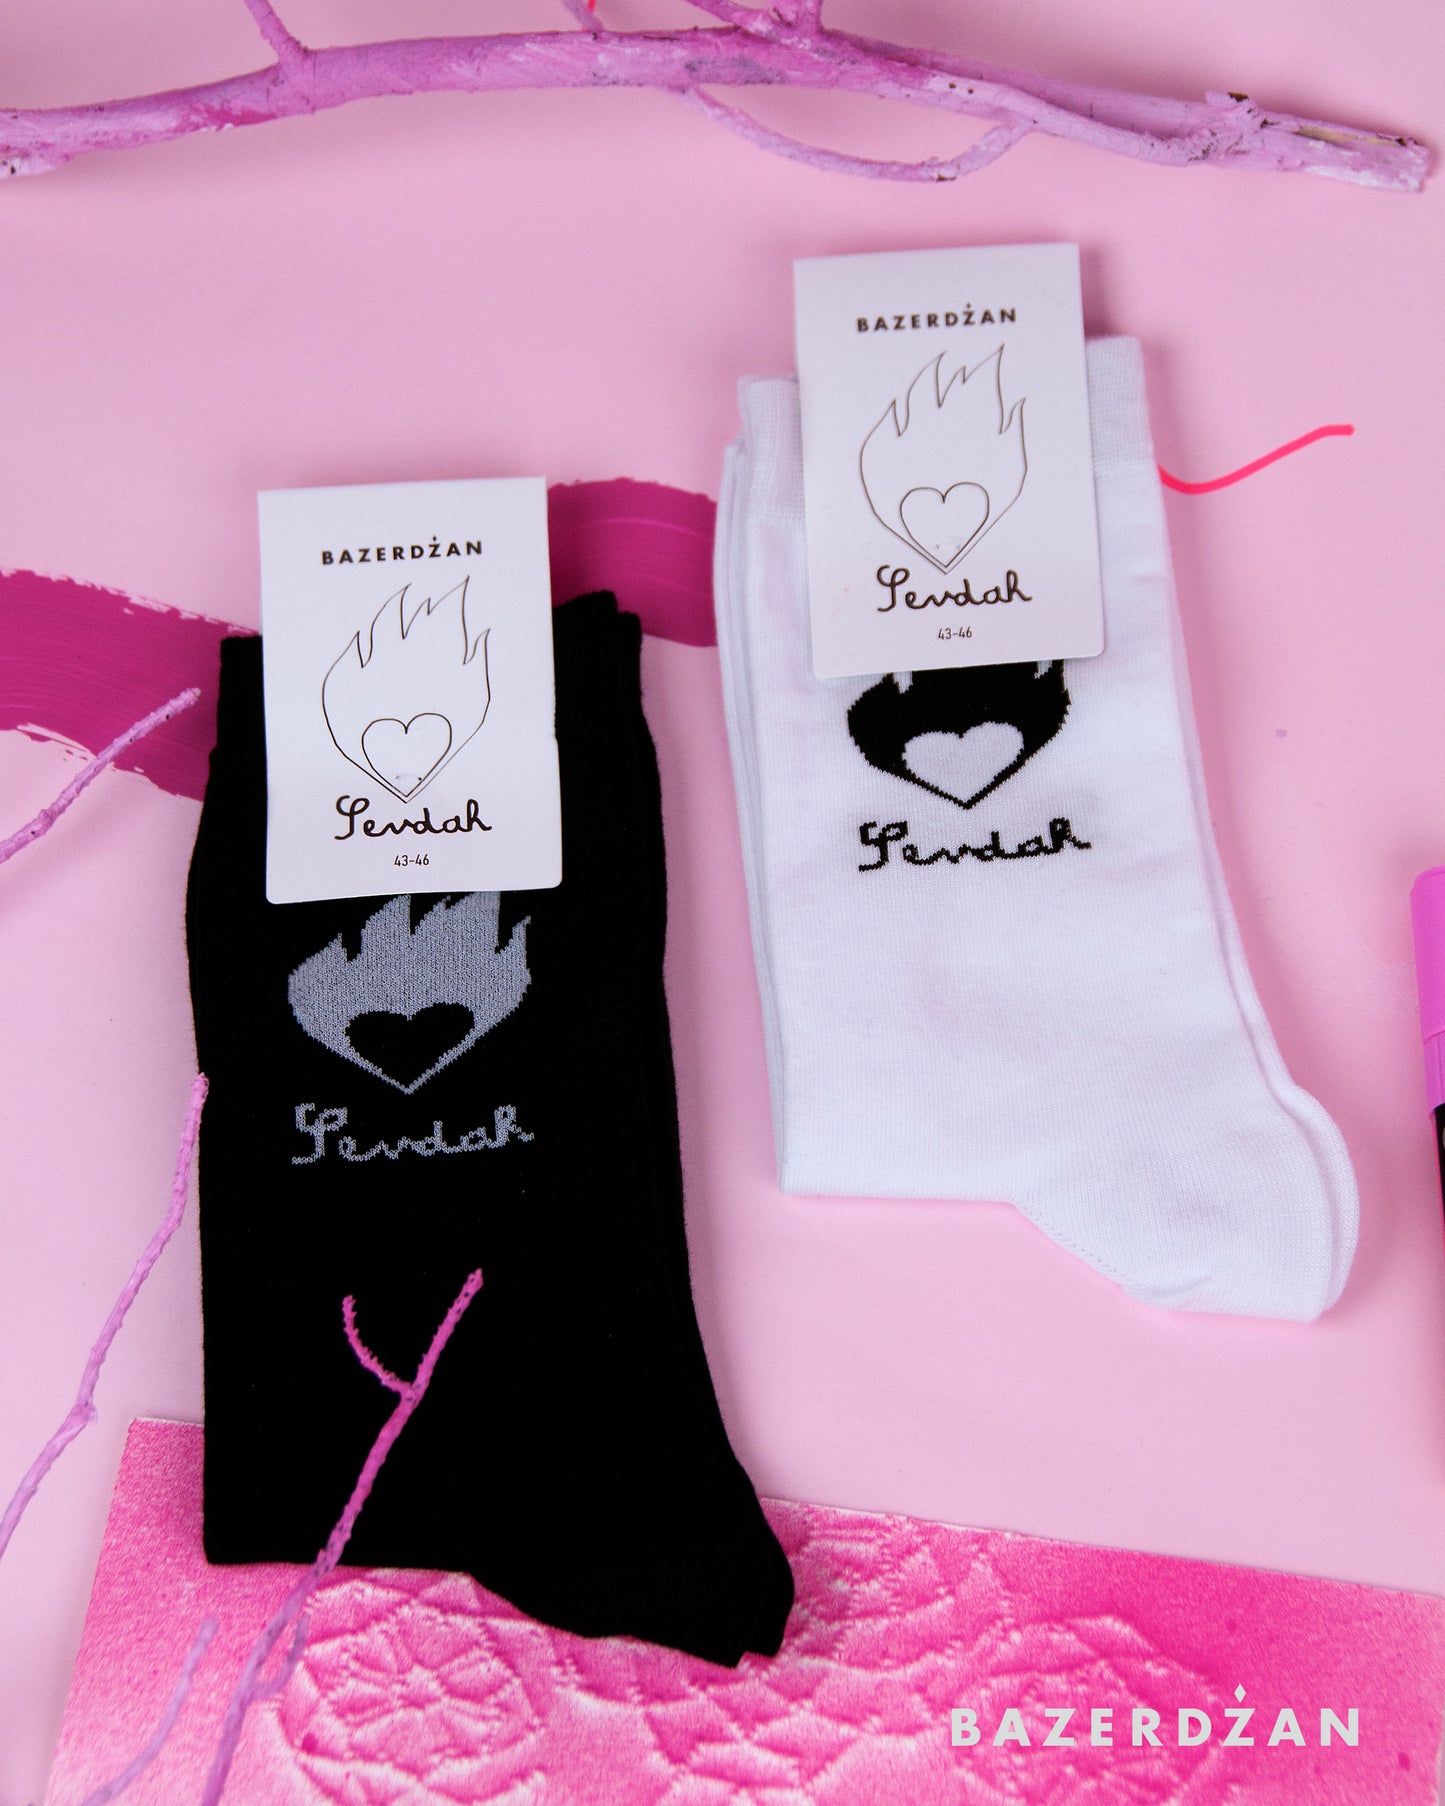 Sevdah Socks - For Men by Bazerdzan Wear